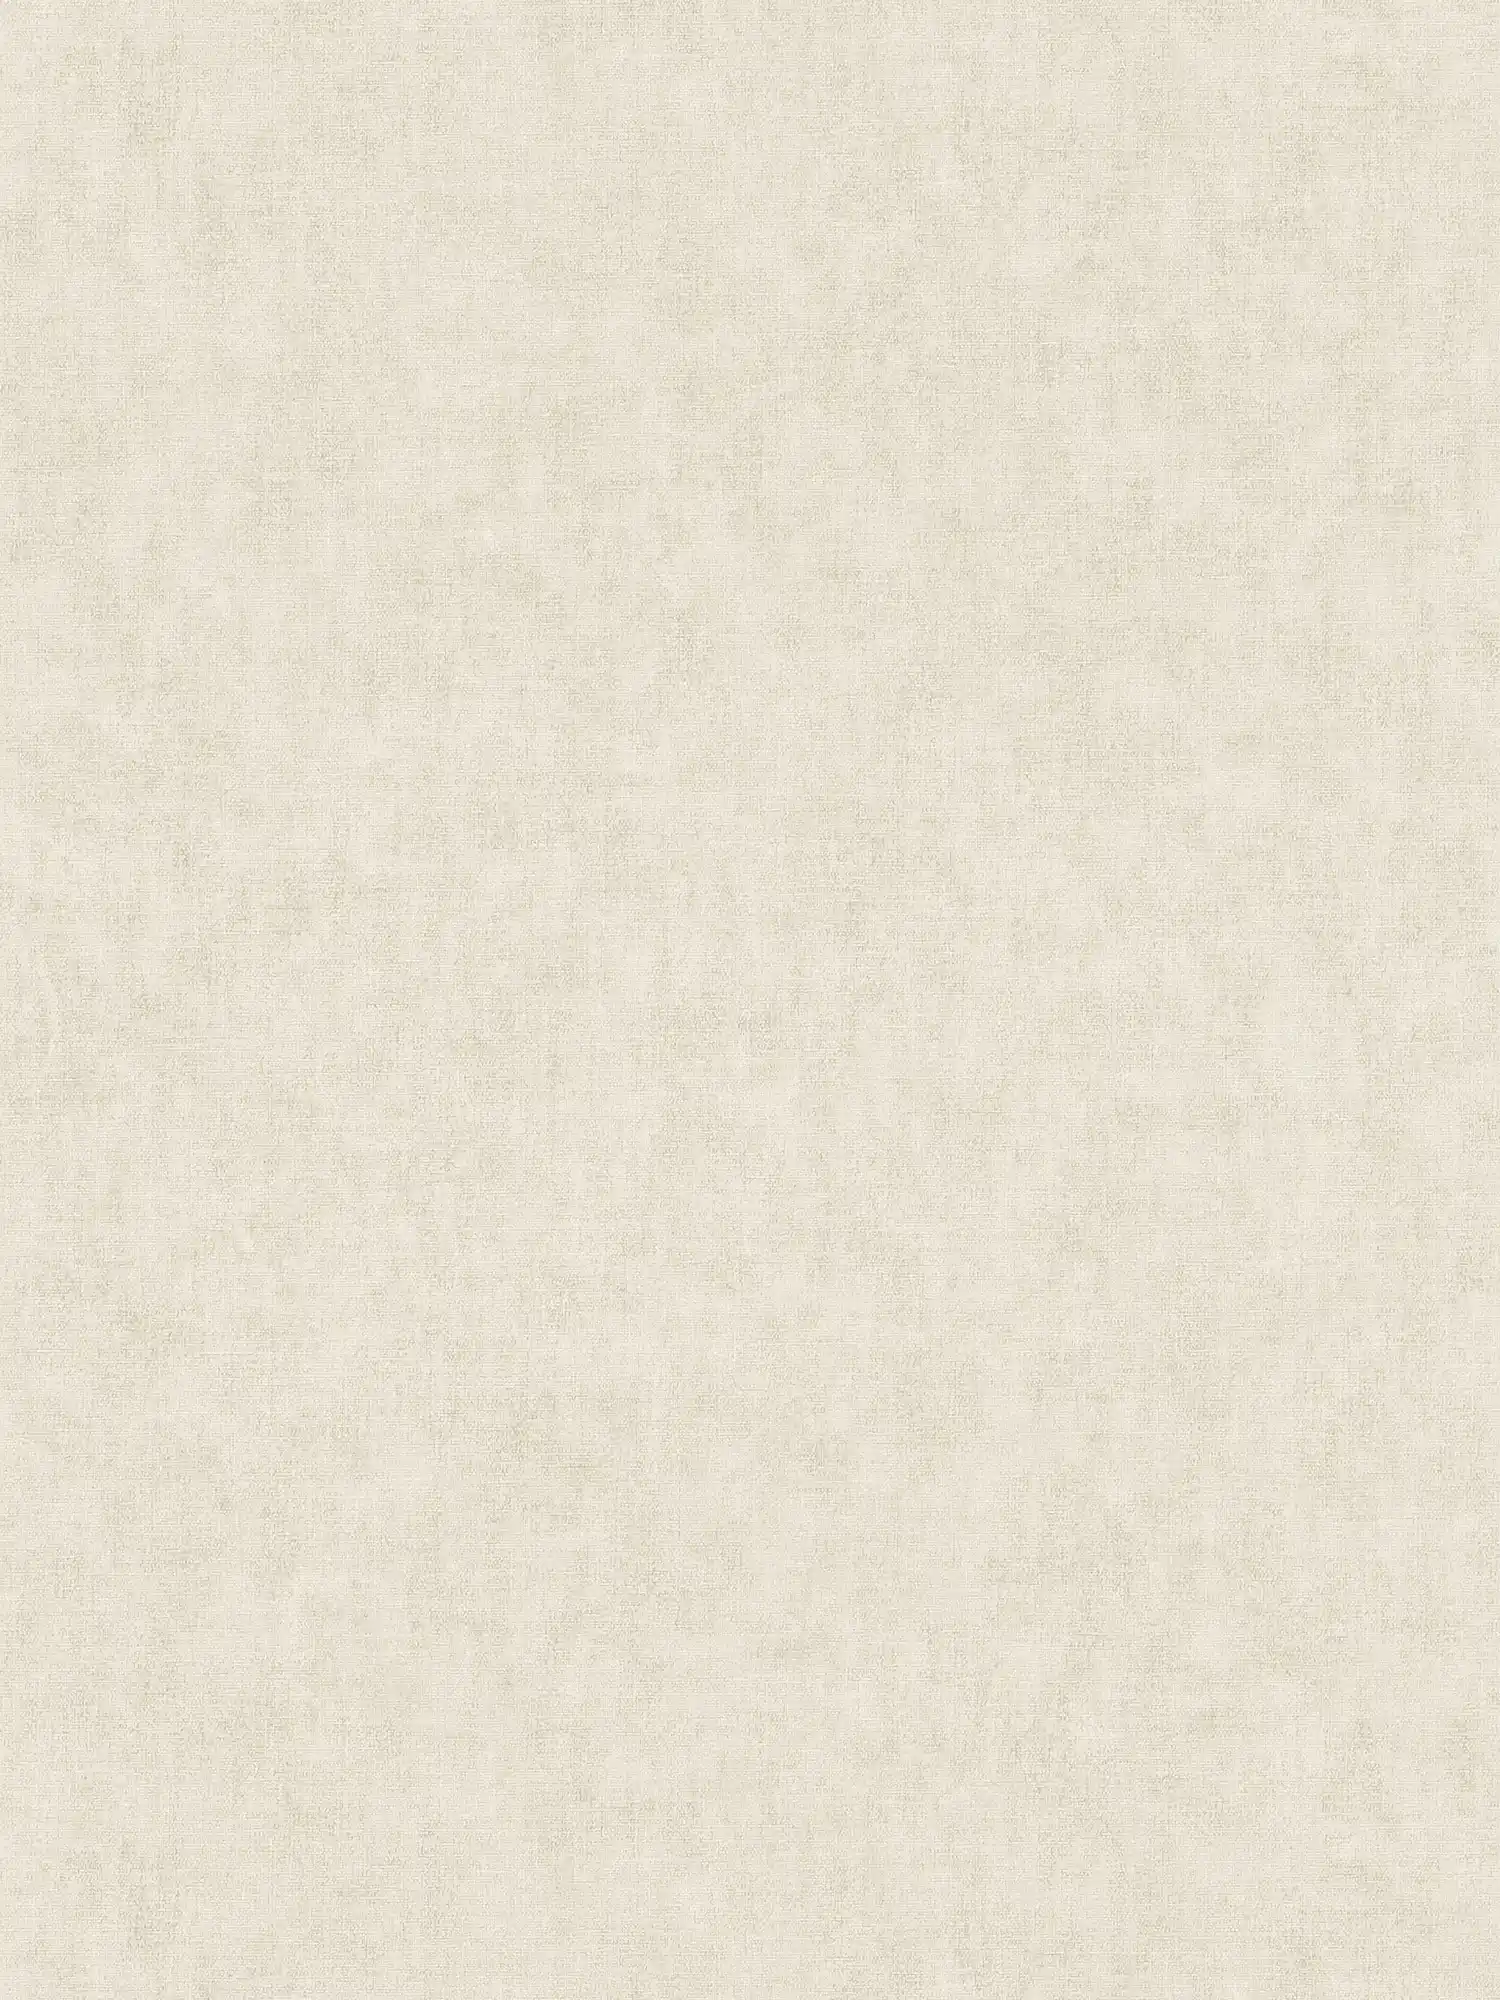 Carta da parati a tinta unita in stile scandinavo con effetto lino - beige
